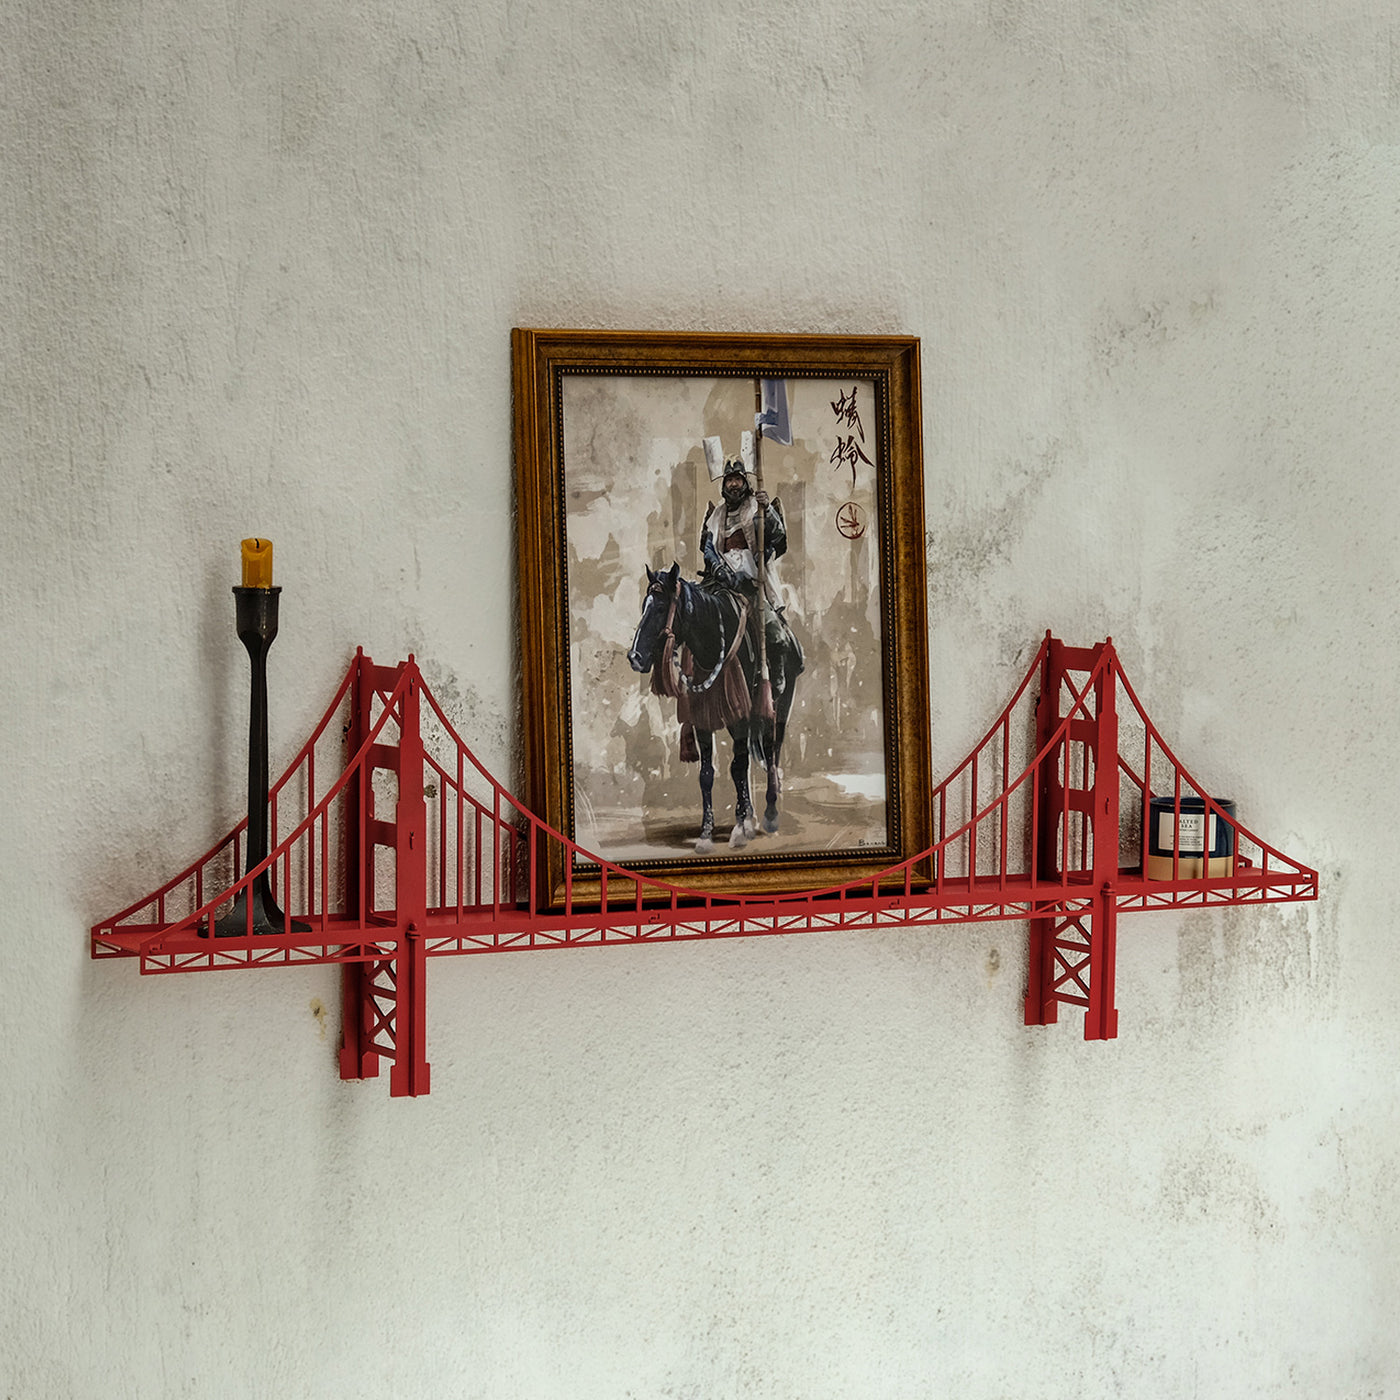 Golden Gate Köprü Raf